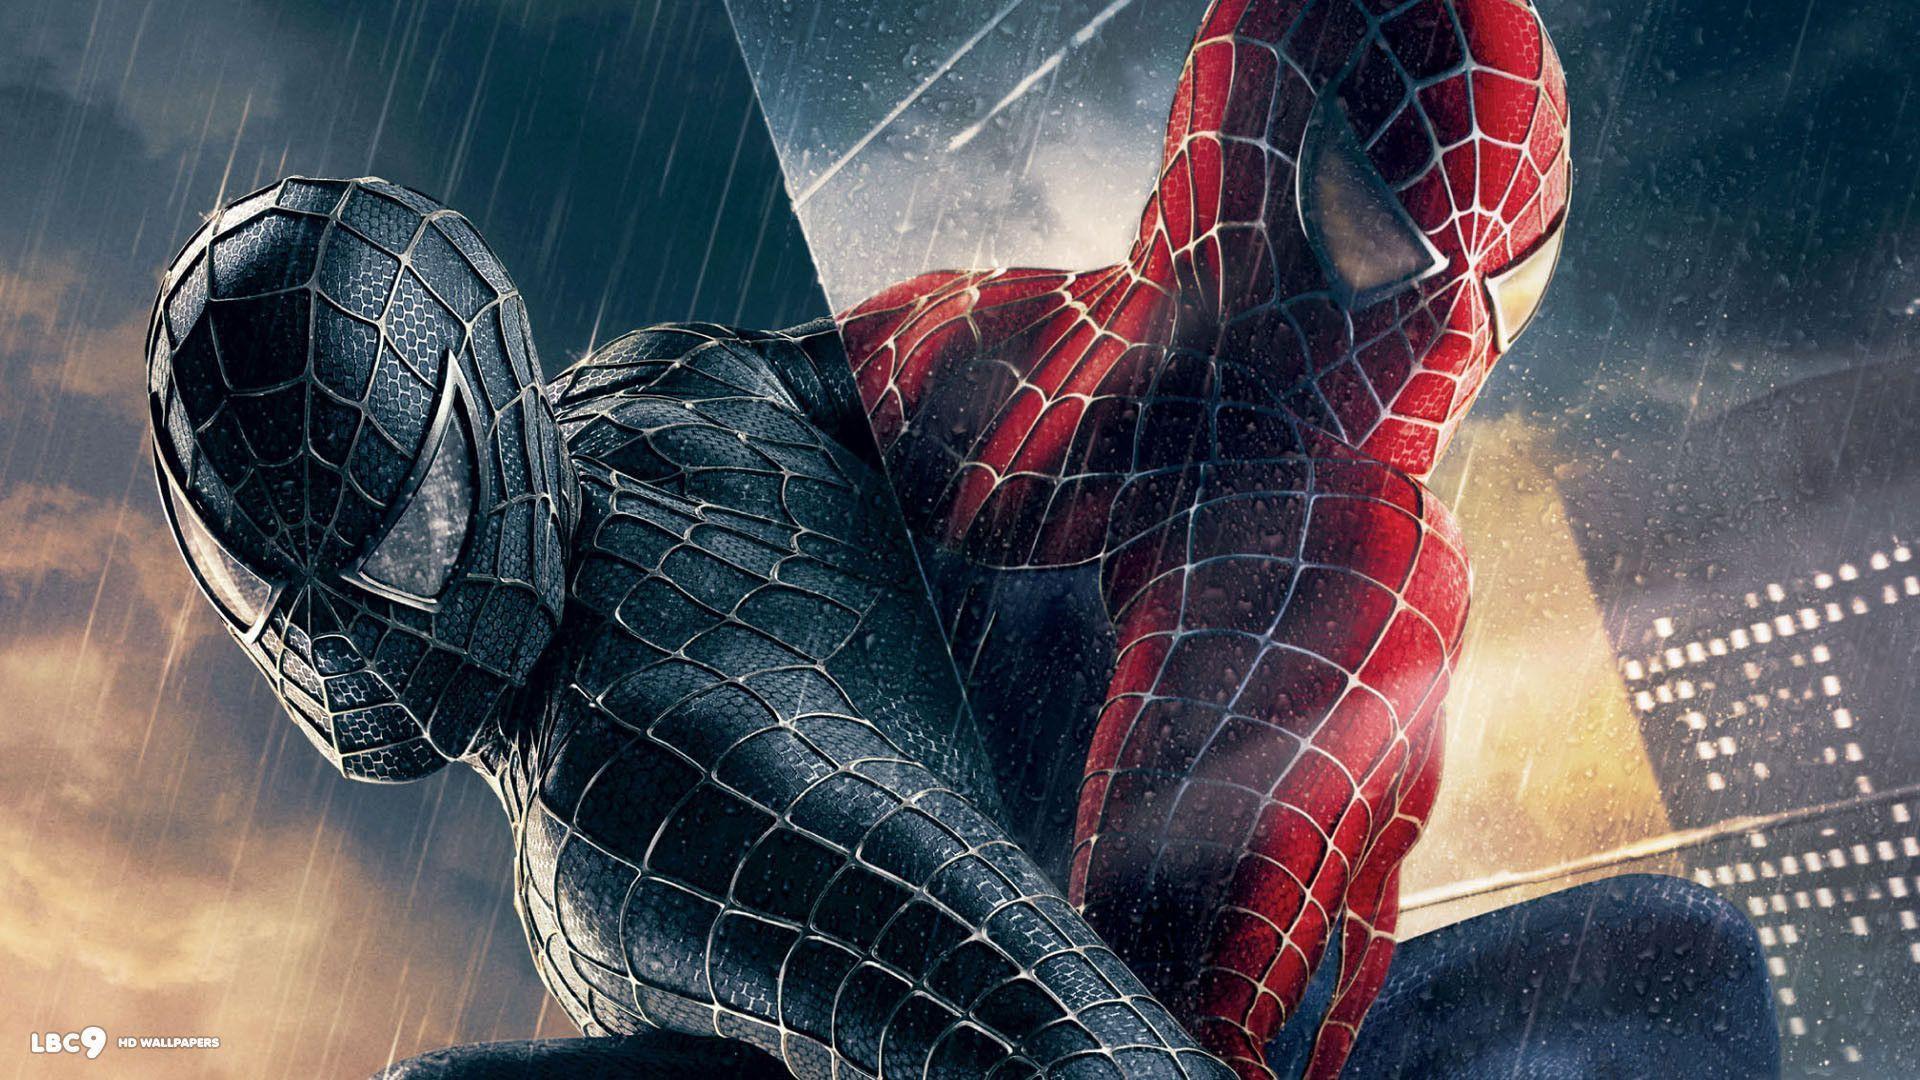 Spiderman 4 Hd Wallpaper 1080p.com. Latest HD